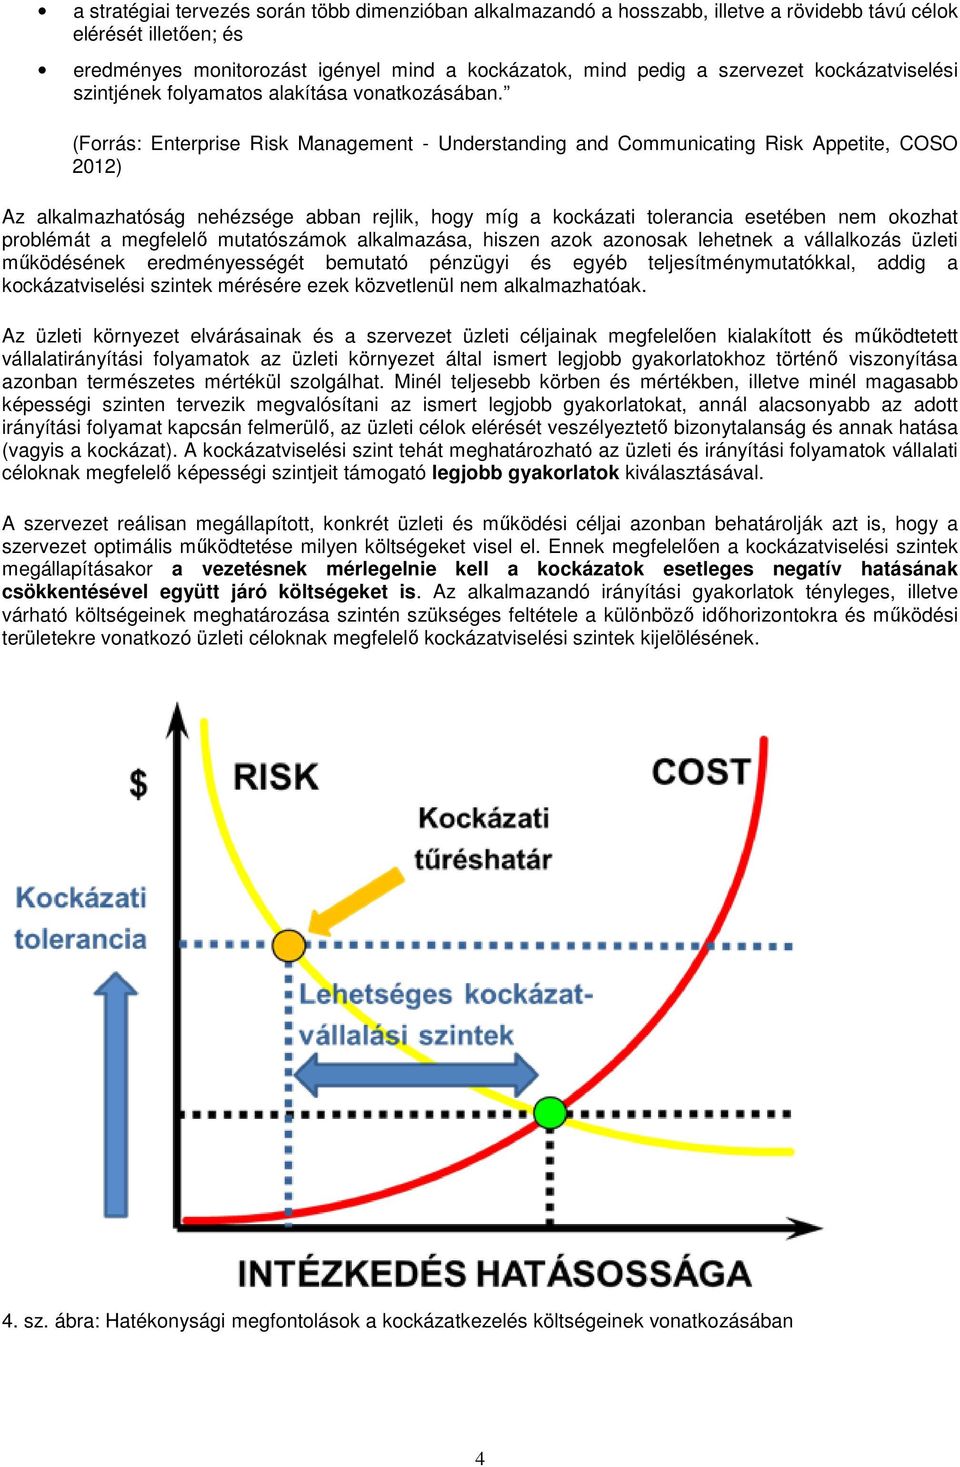 (Forrás: Enterprise Risk Management - Understanding and Communicating Risk Appetite, COSO 2012) Az alkalmazhatóság nehézsége abban rejlik, hogy míg a kockázati tolerancia esetében nem okozhat